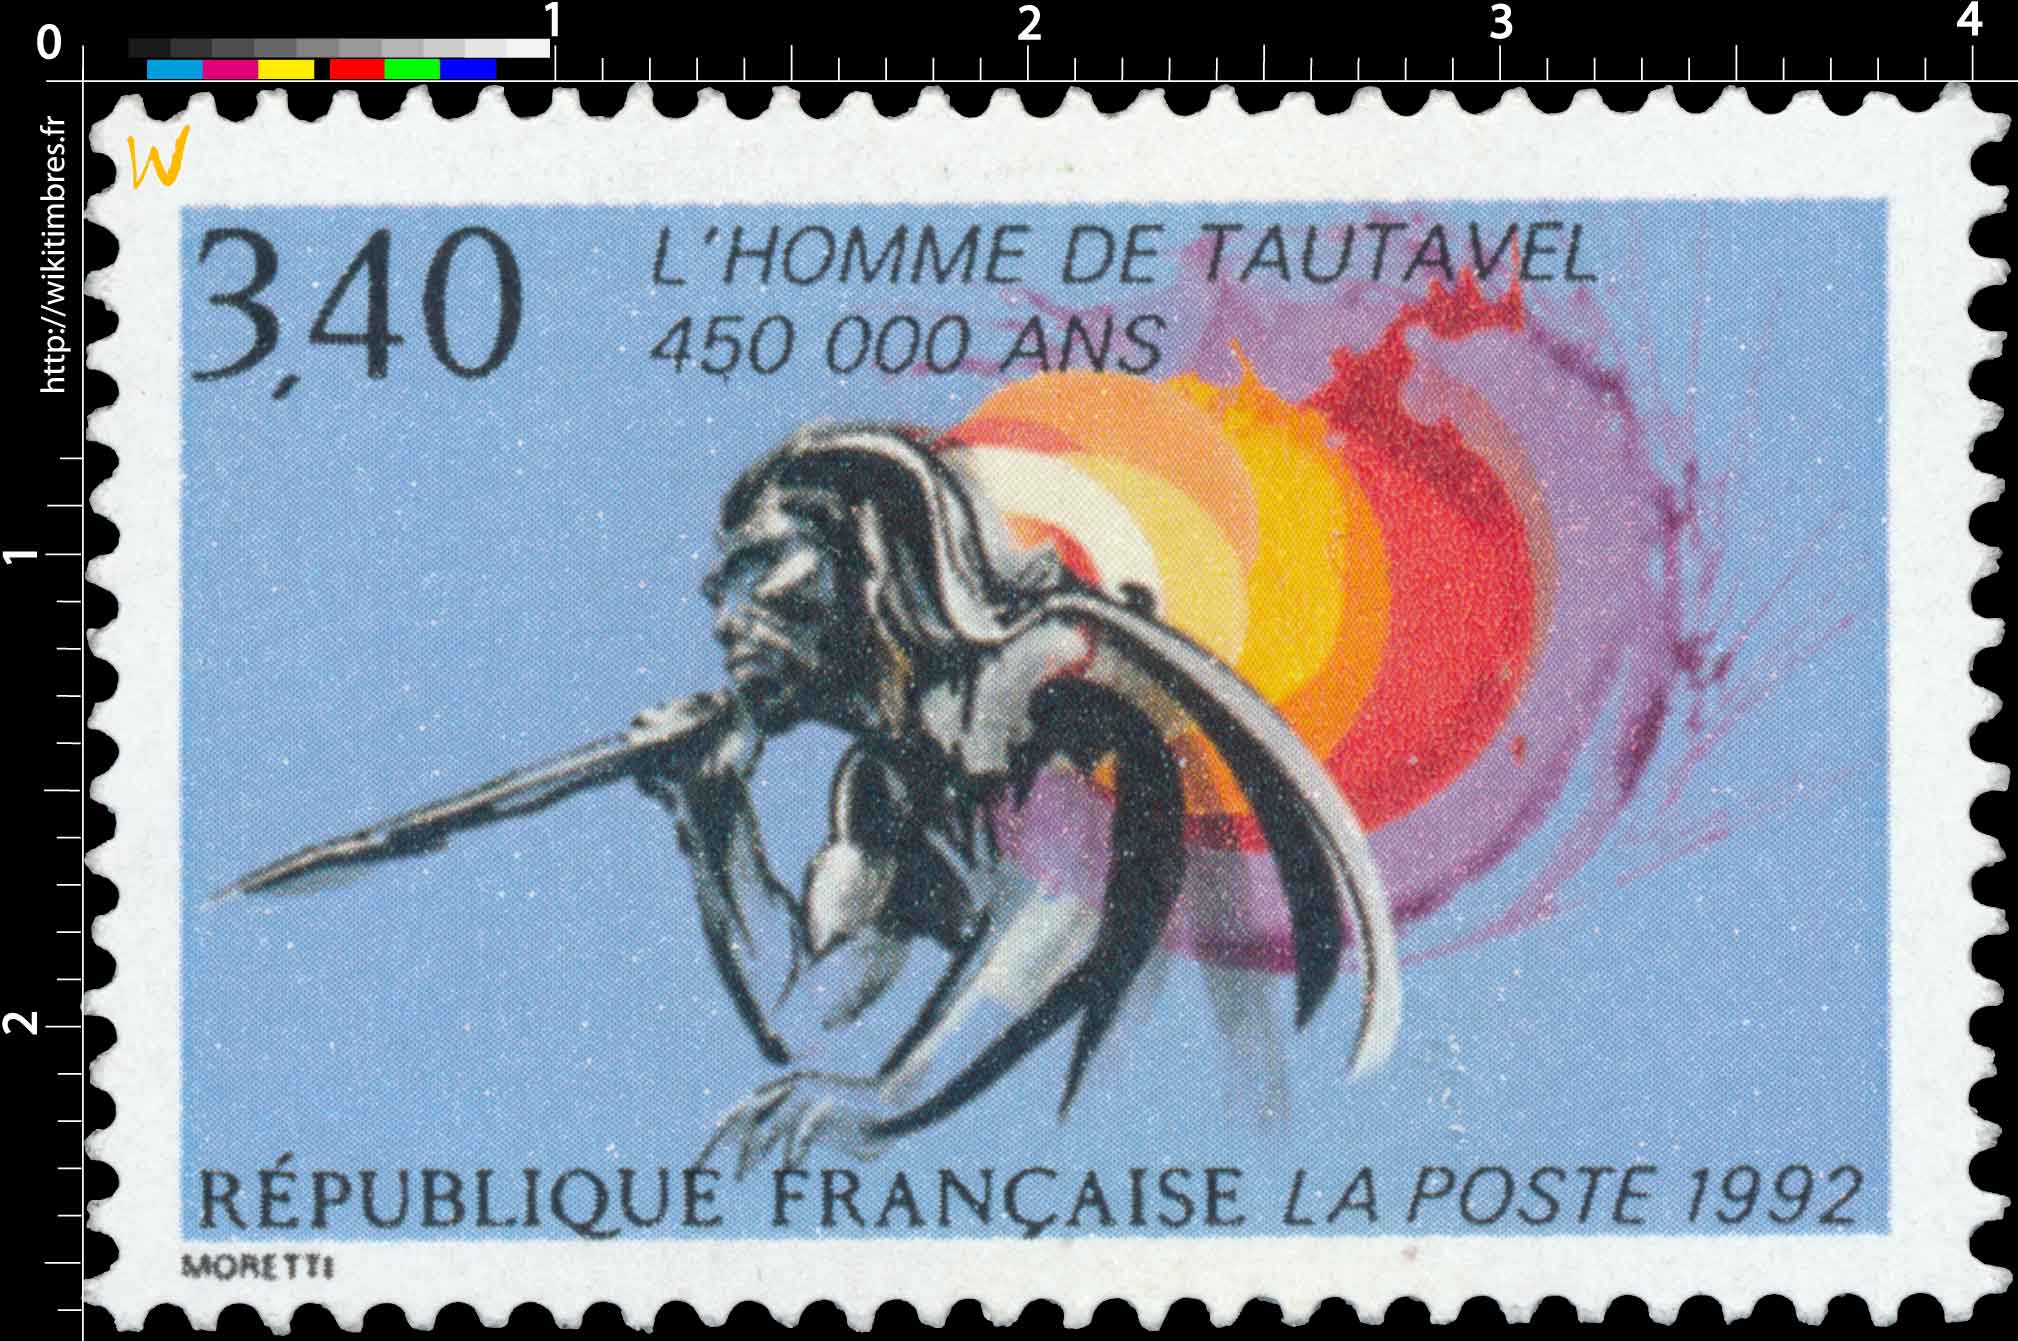 1992 L'HOMME DE TAUTAVEL 450 000 ANS